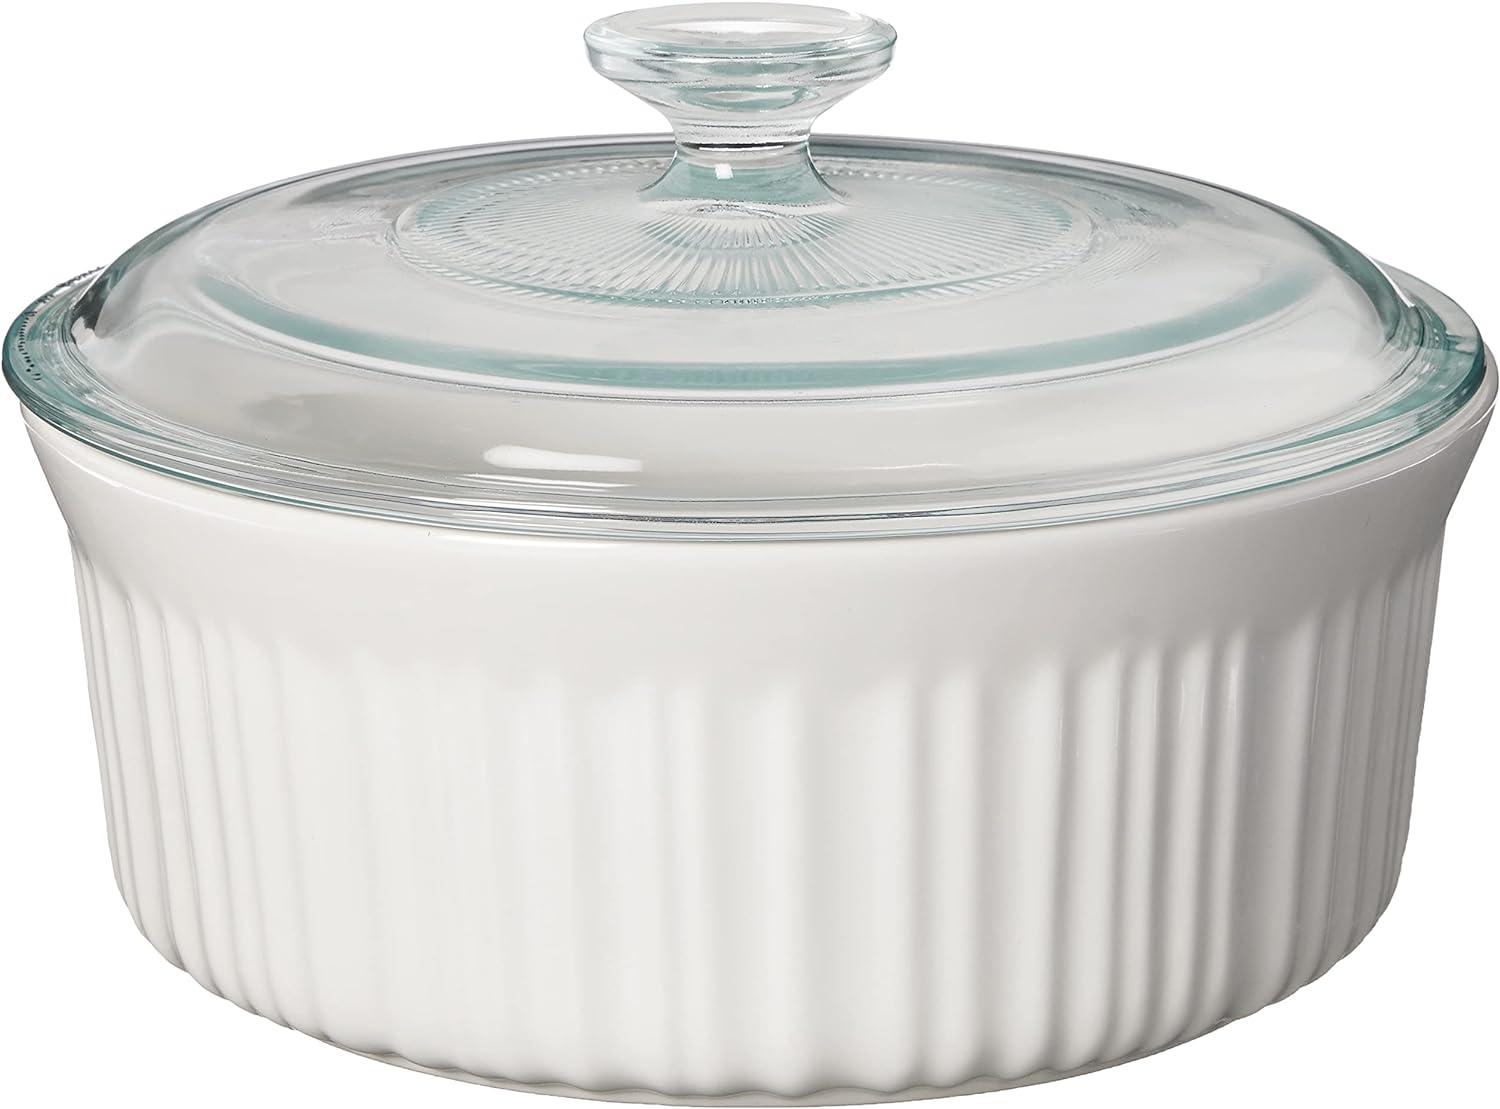 CorningWare French White 20-piece Bakeware Set 